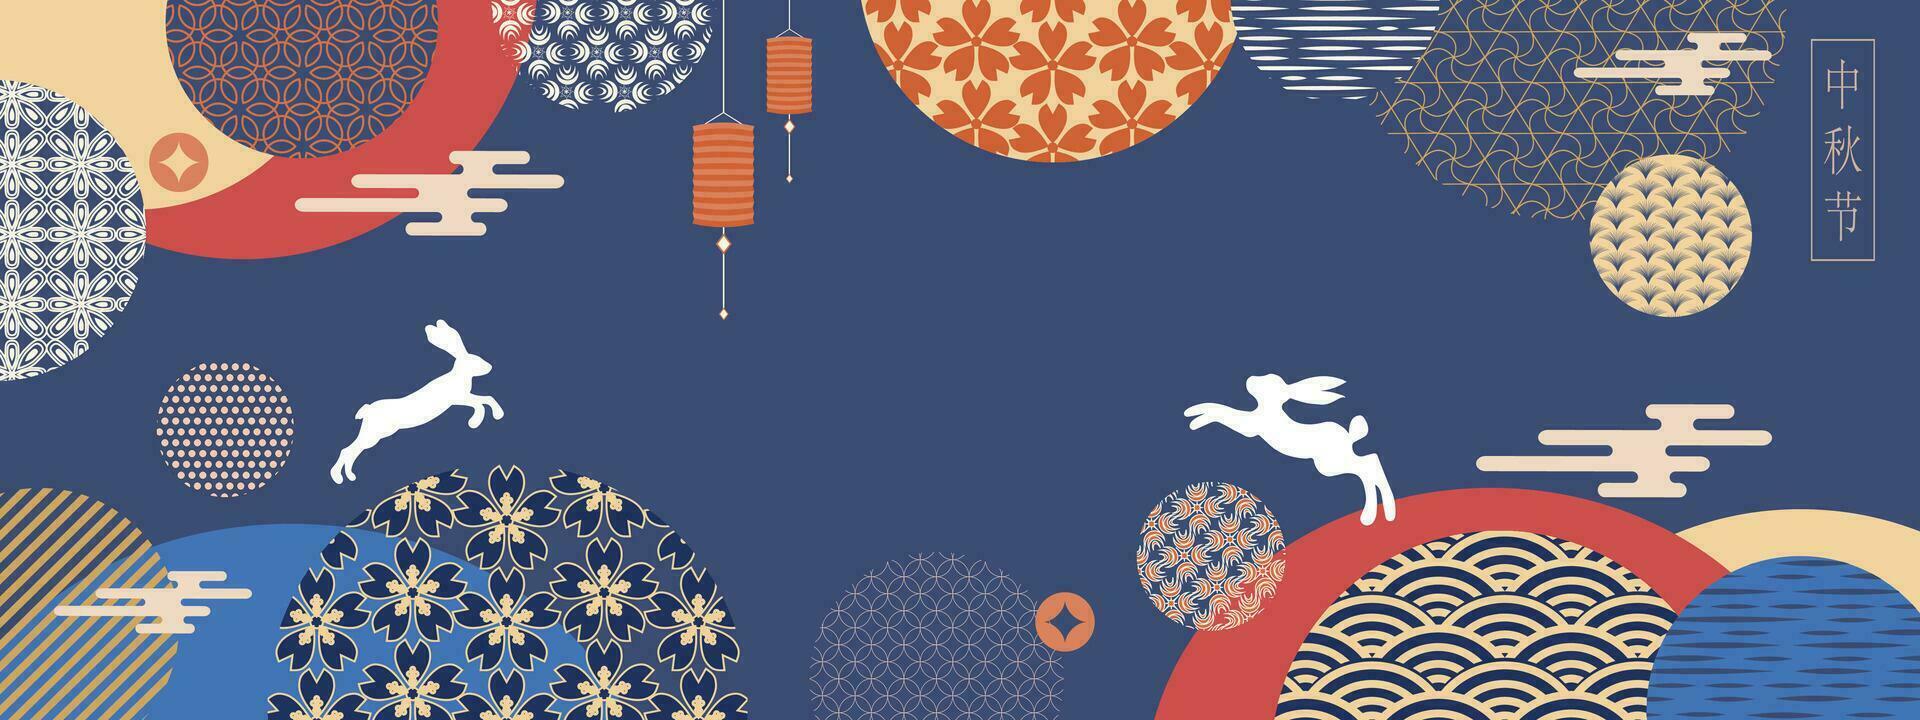 bandiera design con tradizionale Cinese pieno Luna cerchi, salto lepri sotto il Luna. tradizionale modelli e simboli. traduzione a partire dal Cinese - metà autunno Festival. vettore illustrazione